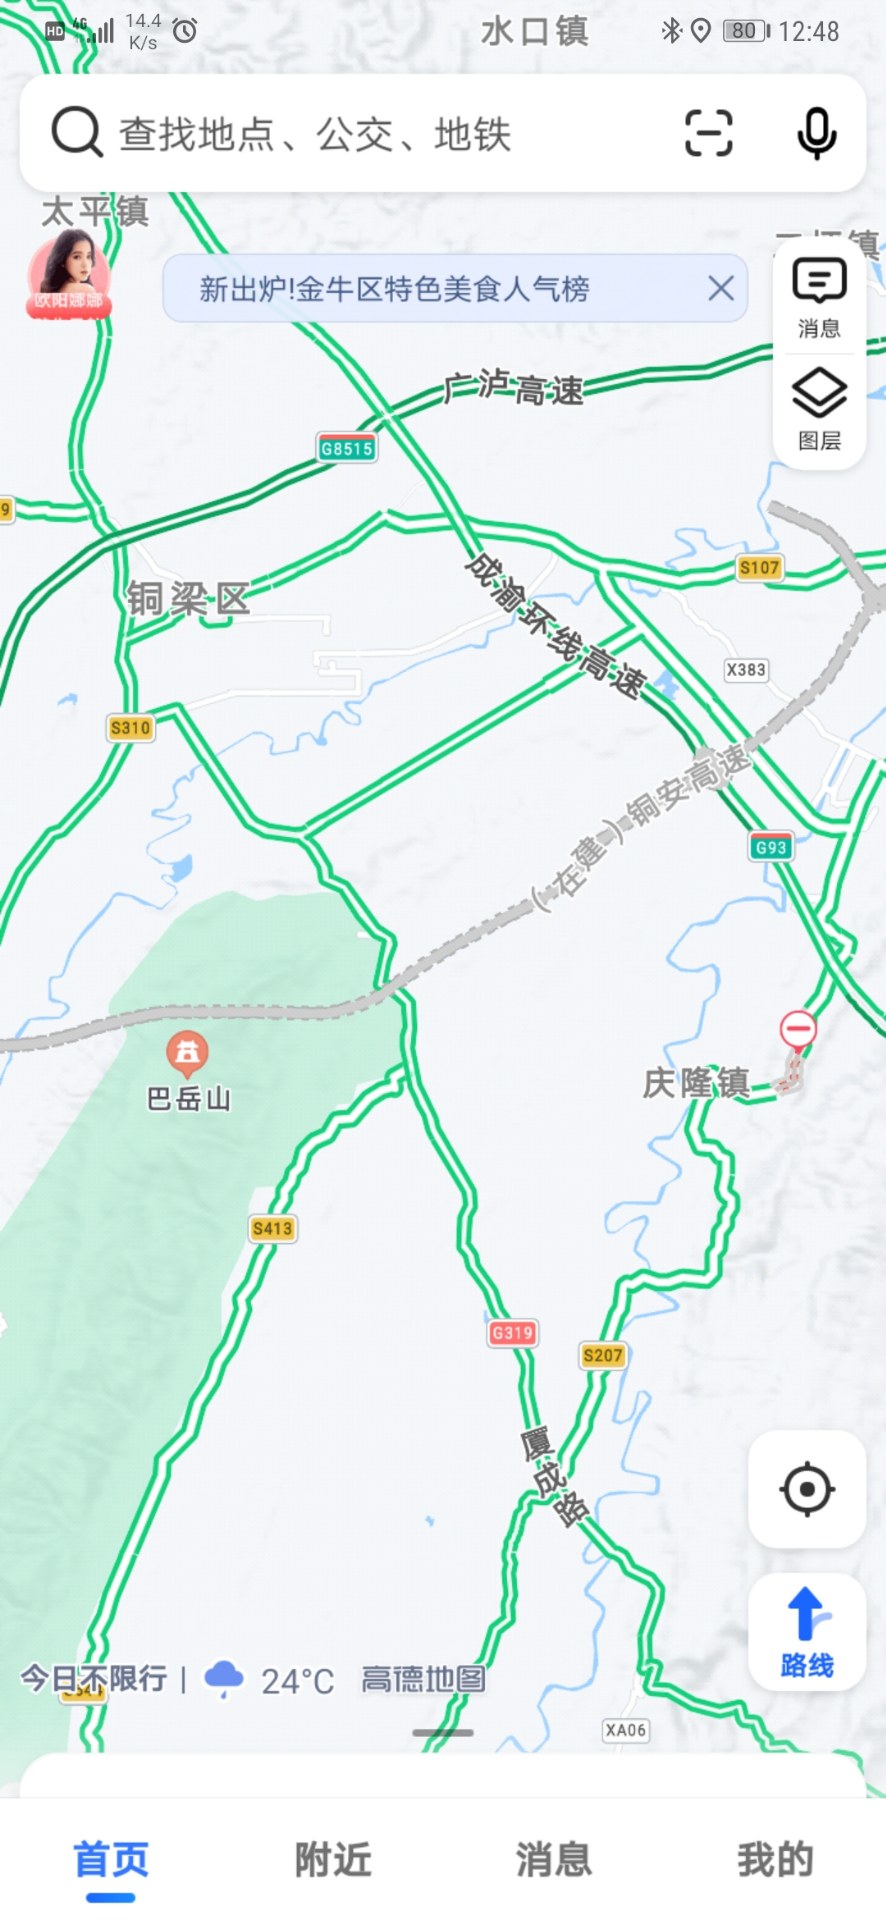 渝铜安高速规划线路图片